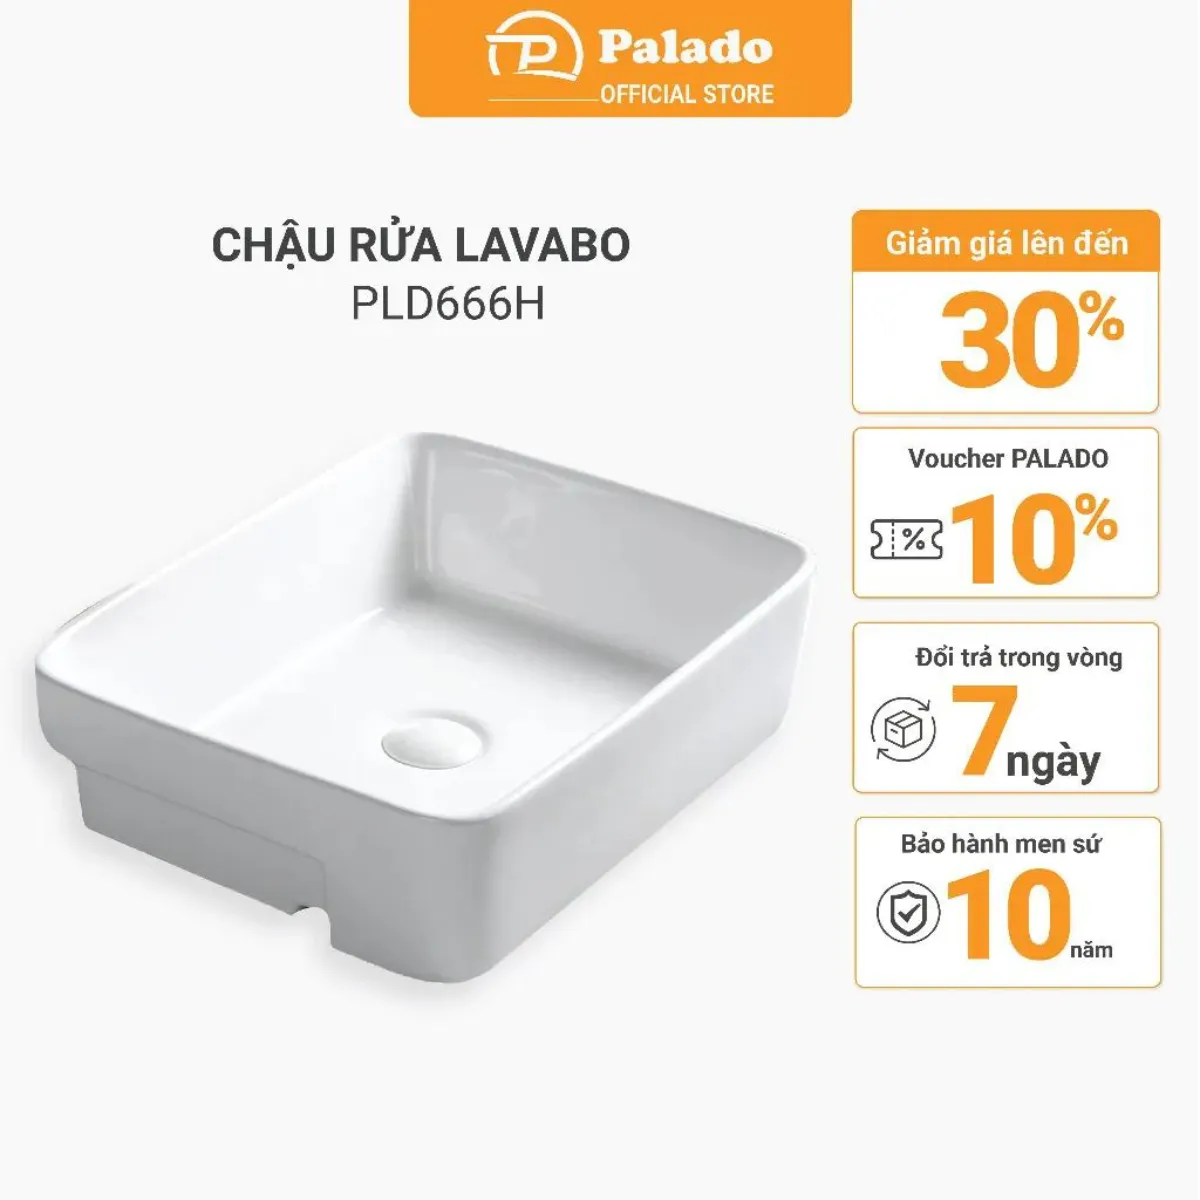 Chậu rửa lavabo dương bàn Palado PLD666H – một thiết bị không thể thiếu trong không gian phòng tắm hiện đại